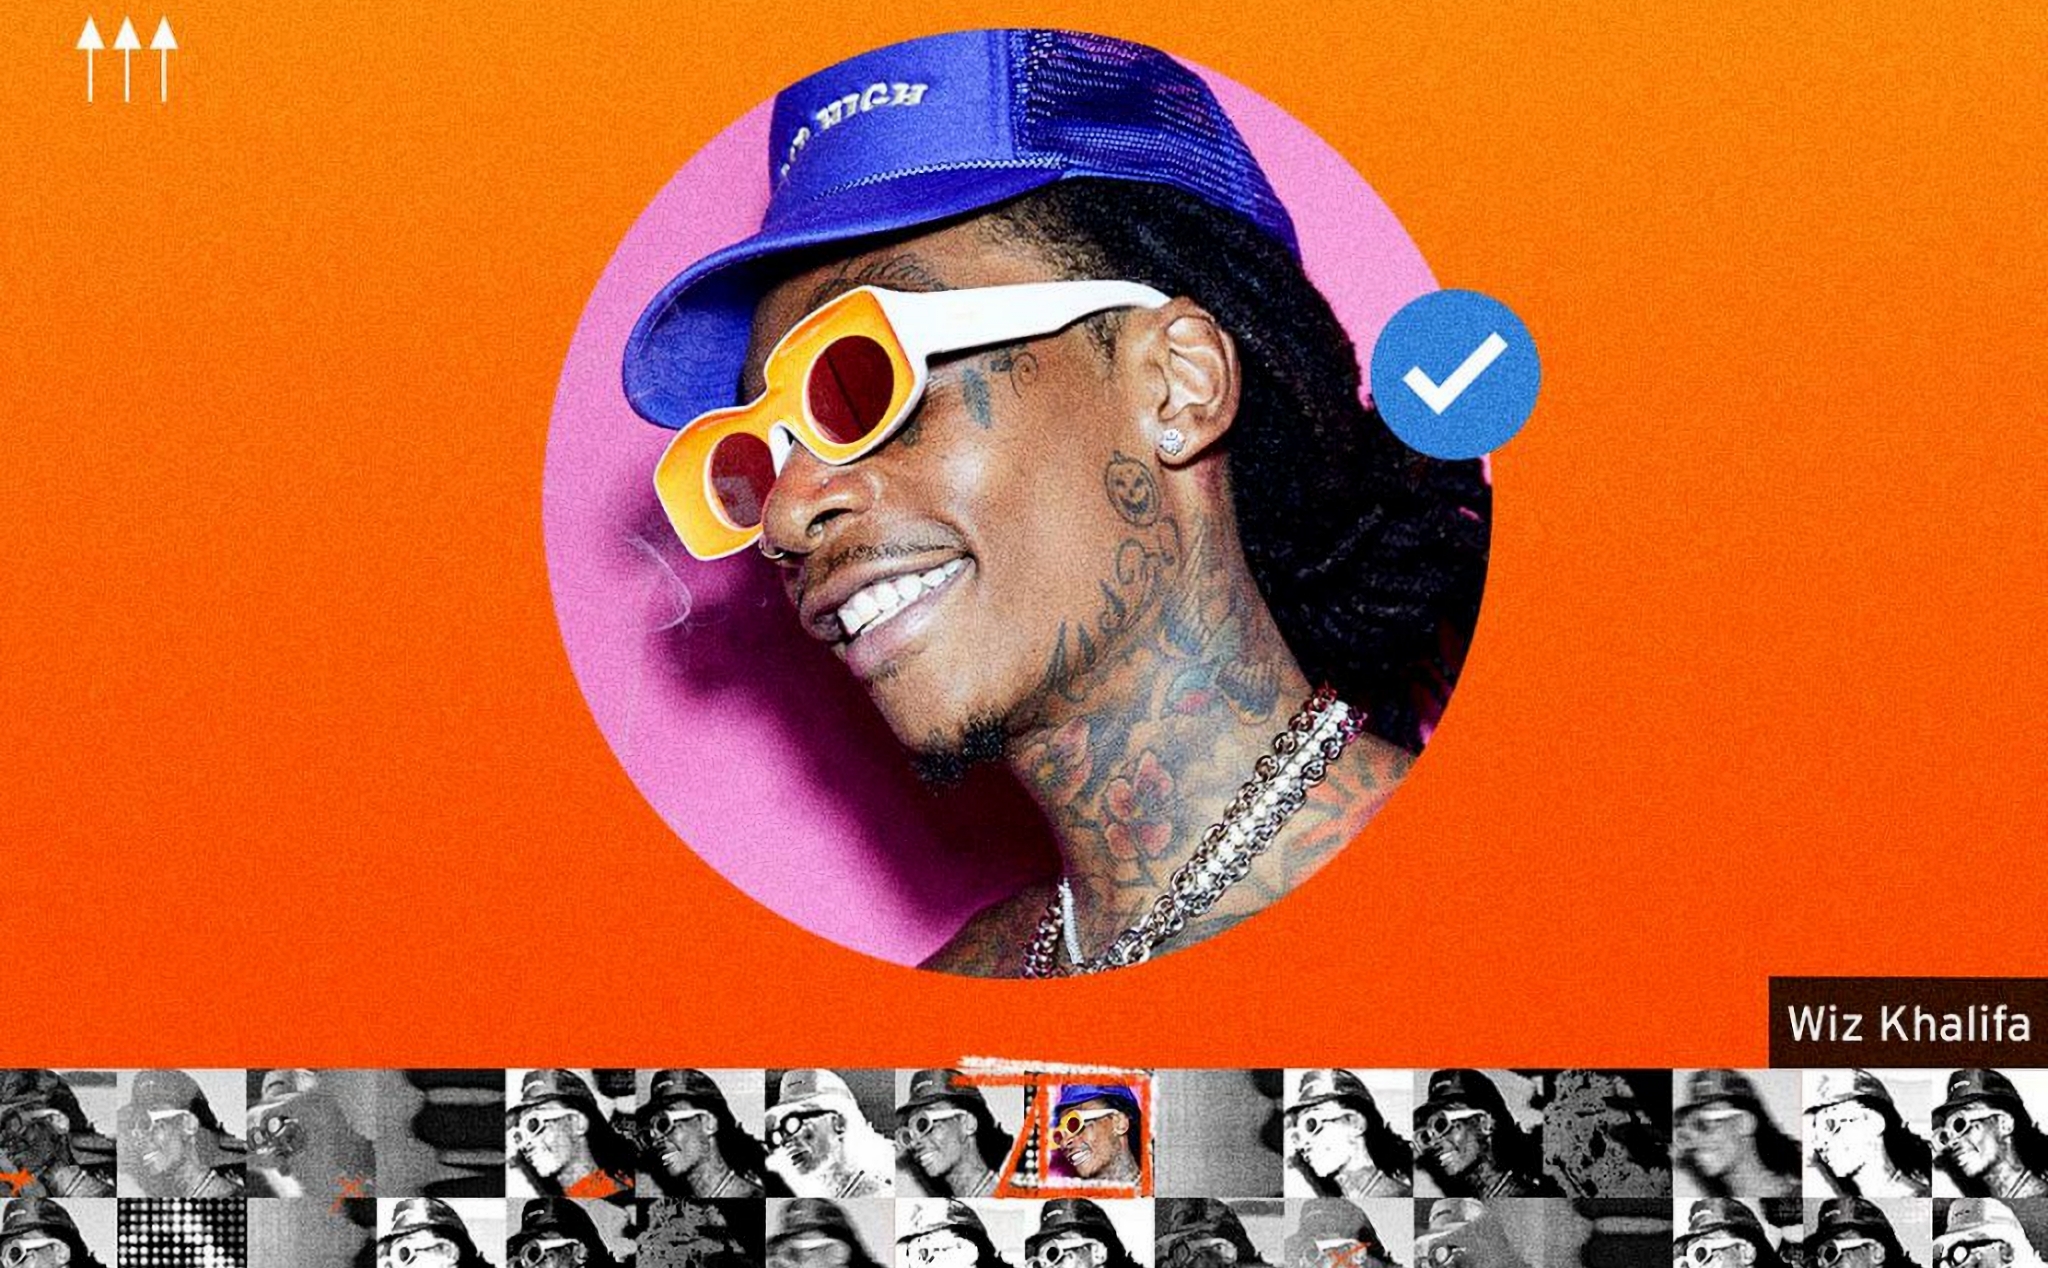 SoundCloud thêm dấu tick màu xanh thể hiện tài khoản chính thức của các nghệ sĩ nổi tiếng